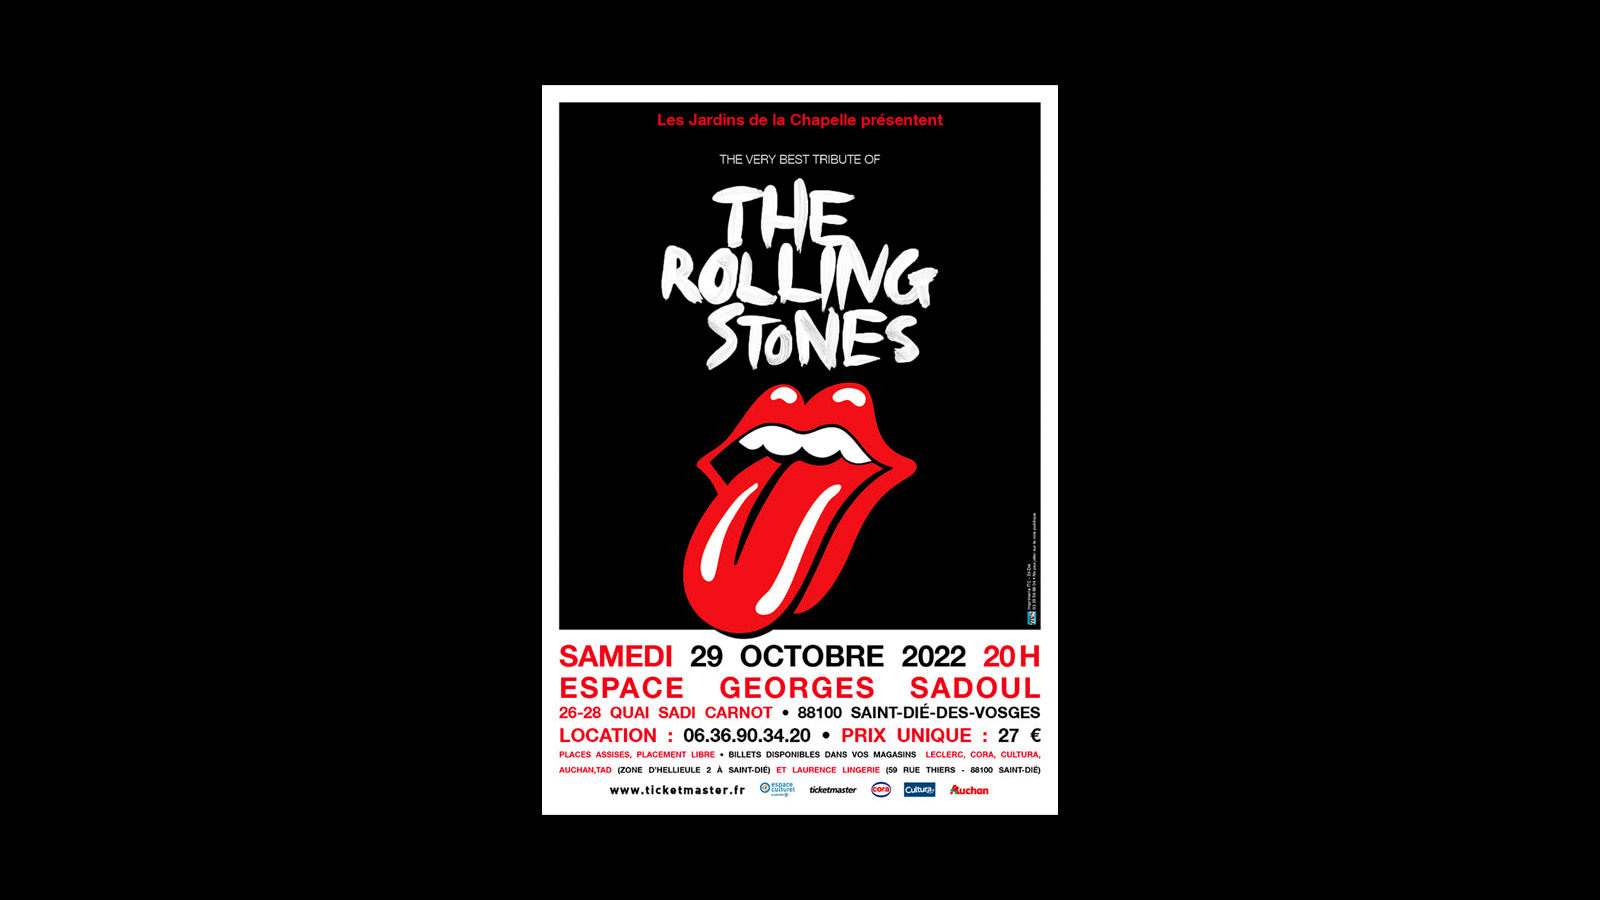 The very best tribute of the Rolling stones en concert à Saint-Dié-des-Vosges